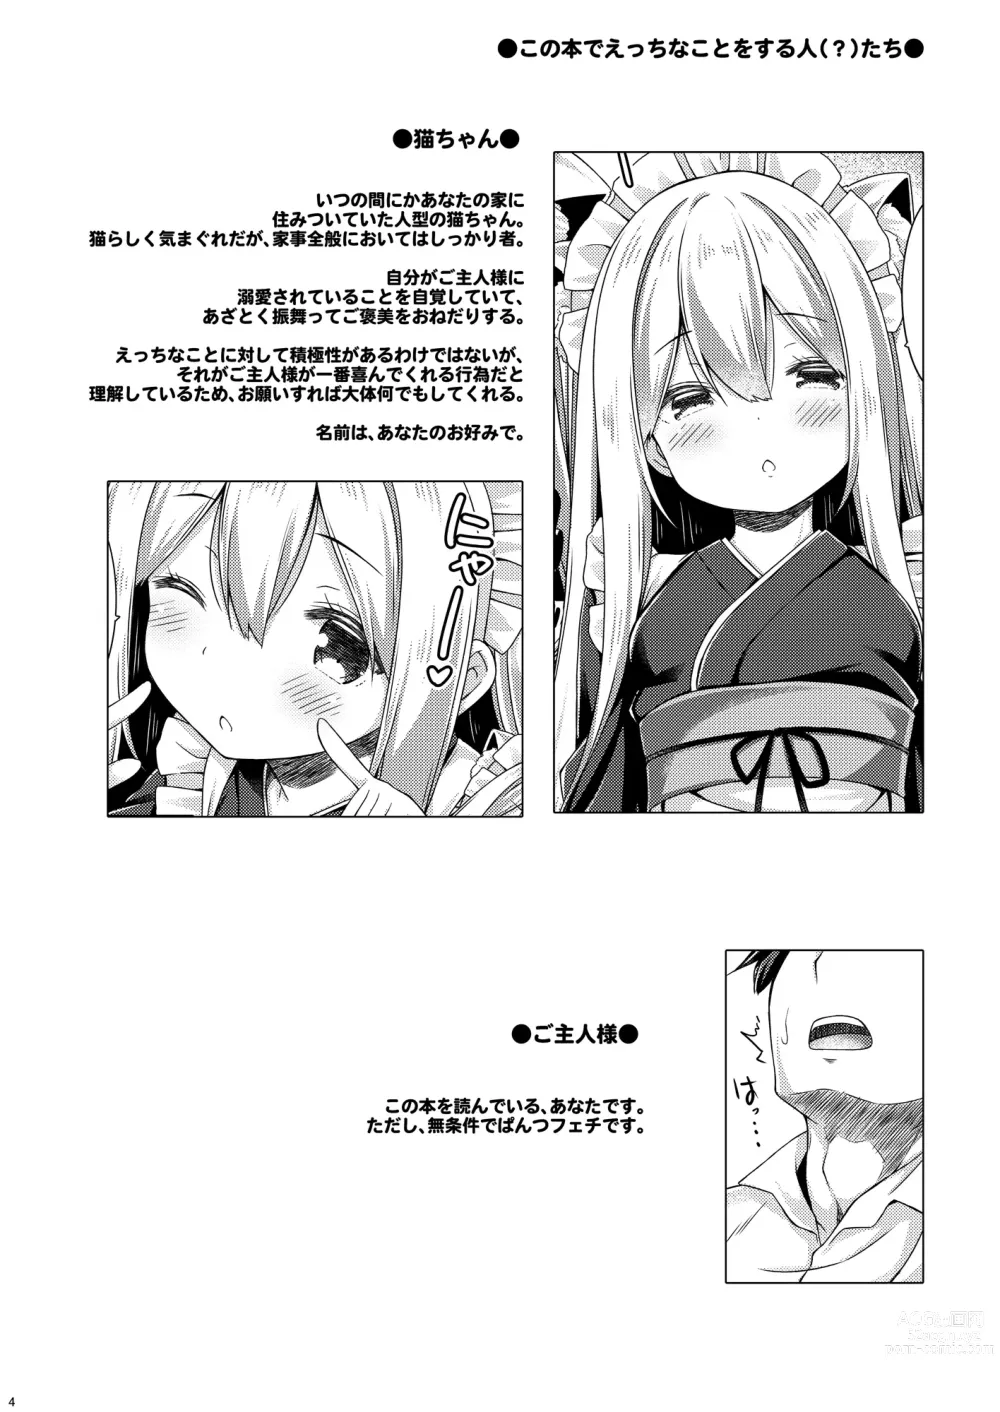 Page 5 of doujinshi Anata no Neko-chan Maid.